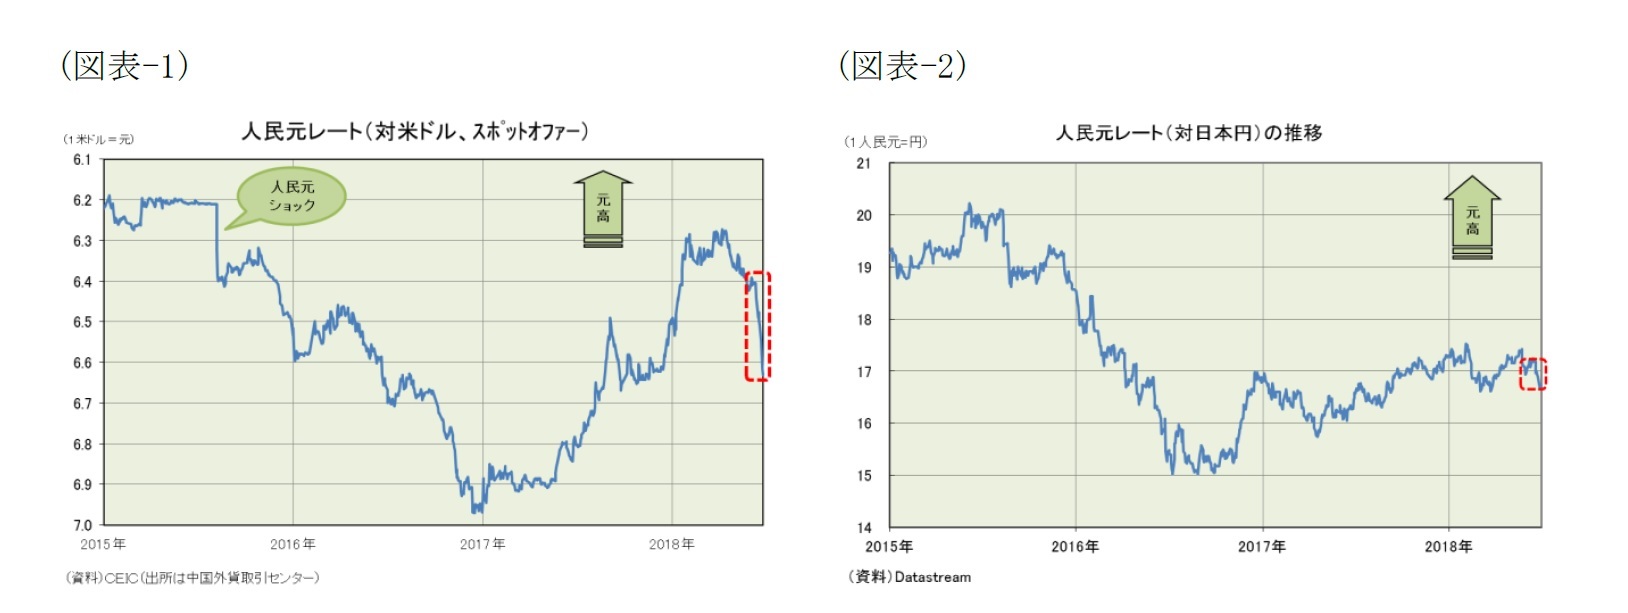 （図表-1）人民元レート(対米ドル、スポットオファー)/（図表-2）人民元レート(対日本円)の推移